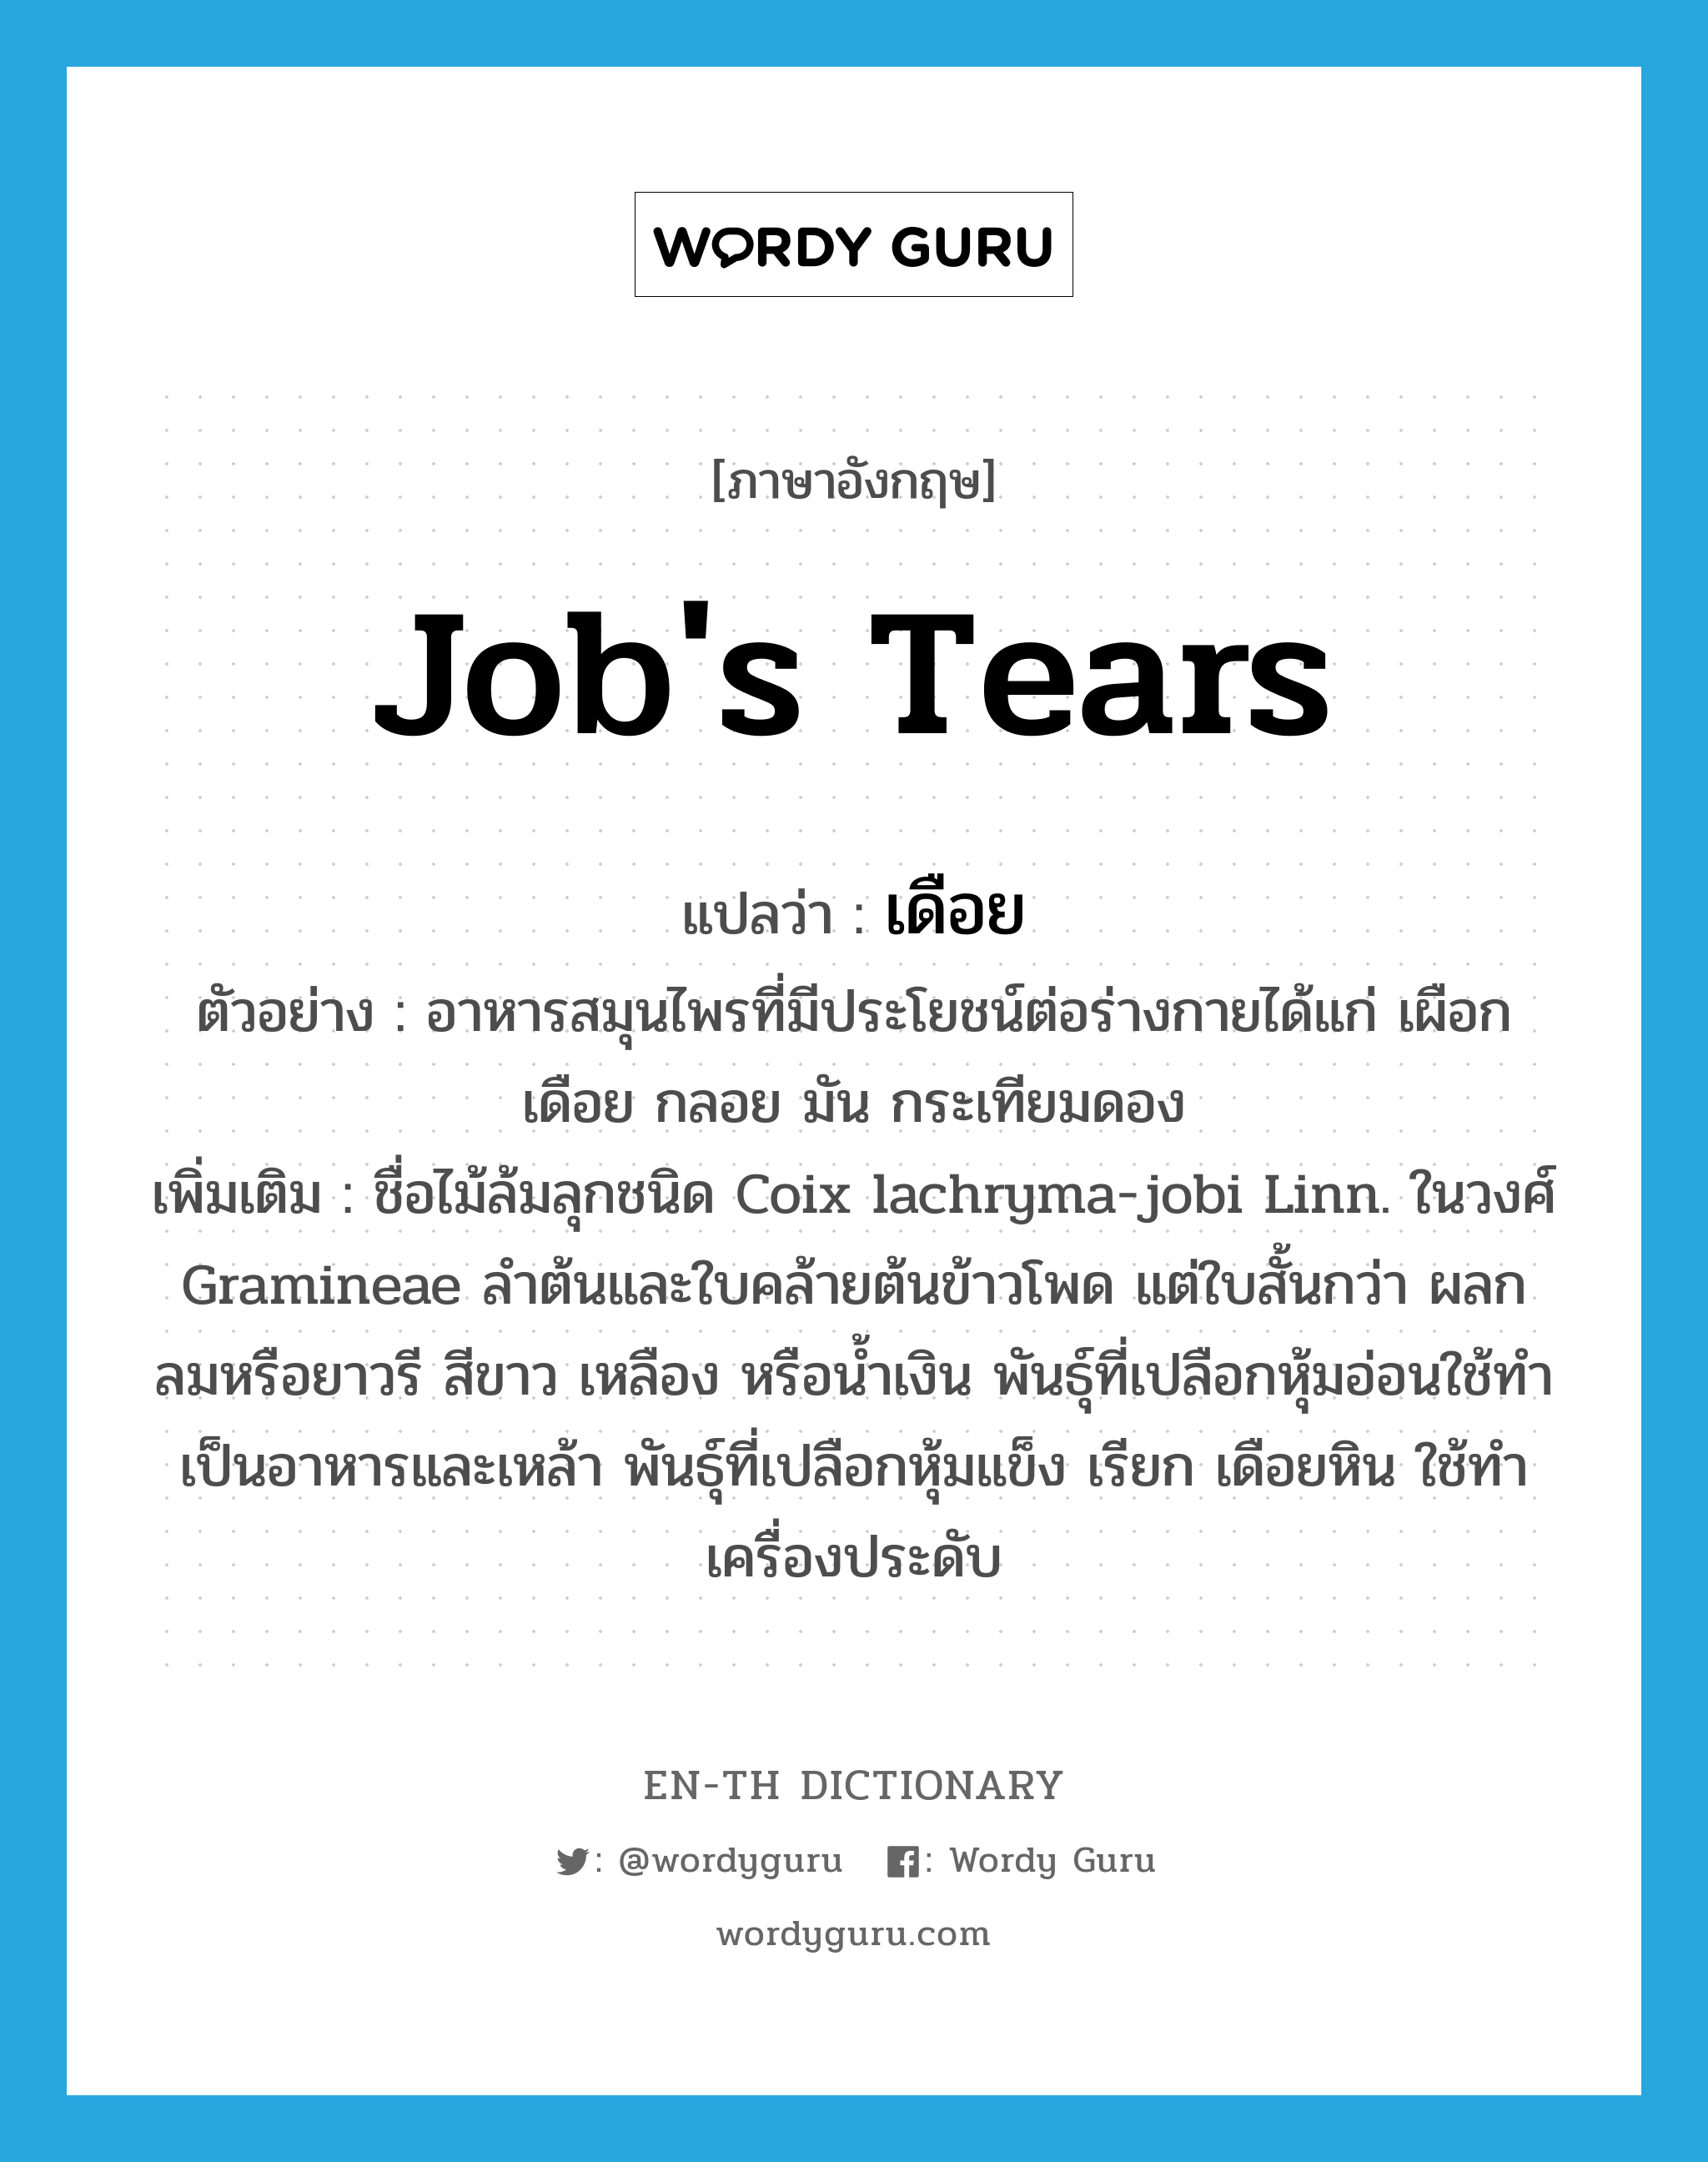 Job's tears แปลว่า?, คำศัพท์ภาษาอังกฤษ Job's tears แปลว่า เดือย ประเภท N ตัวอย่าง อาหารสมุนไพรที่มีประโยชน์ต่อร่างกายได้แก่ เผือก เดือย กลอย มัน กระเทียมดอง เพิ่มเติม ชื่อไม้ล้มลุกชนิด Coix lachryma-jobi Linn. ในวงศ์ Gramineae ลำต้นและใบคล้ายต้นข้าวโพด แต่ใบสั้นกว่า ผลกลมหรือยาวรี สีขาว เหลือง หรือน้ำเงิน พันธุ์ที่เปลือกหุ้มอ่อนใช้ทำเป็นอาหารและเหล้า พันธุ์ที่เปลือกหุ้มแข็ง เรียก เดือยหิน ใช้ทำเครื่องประดับ หมวด N